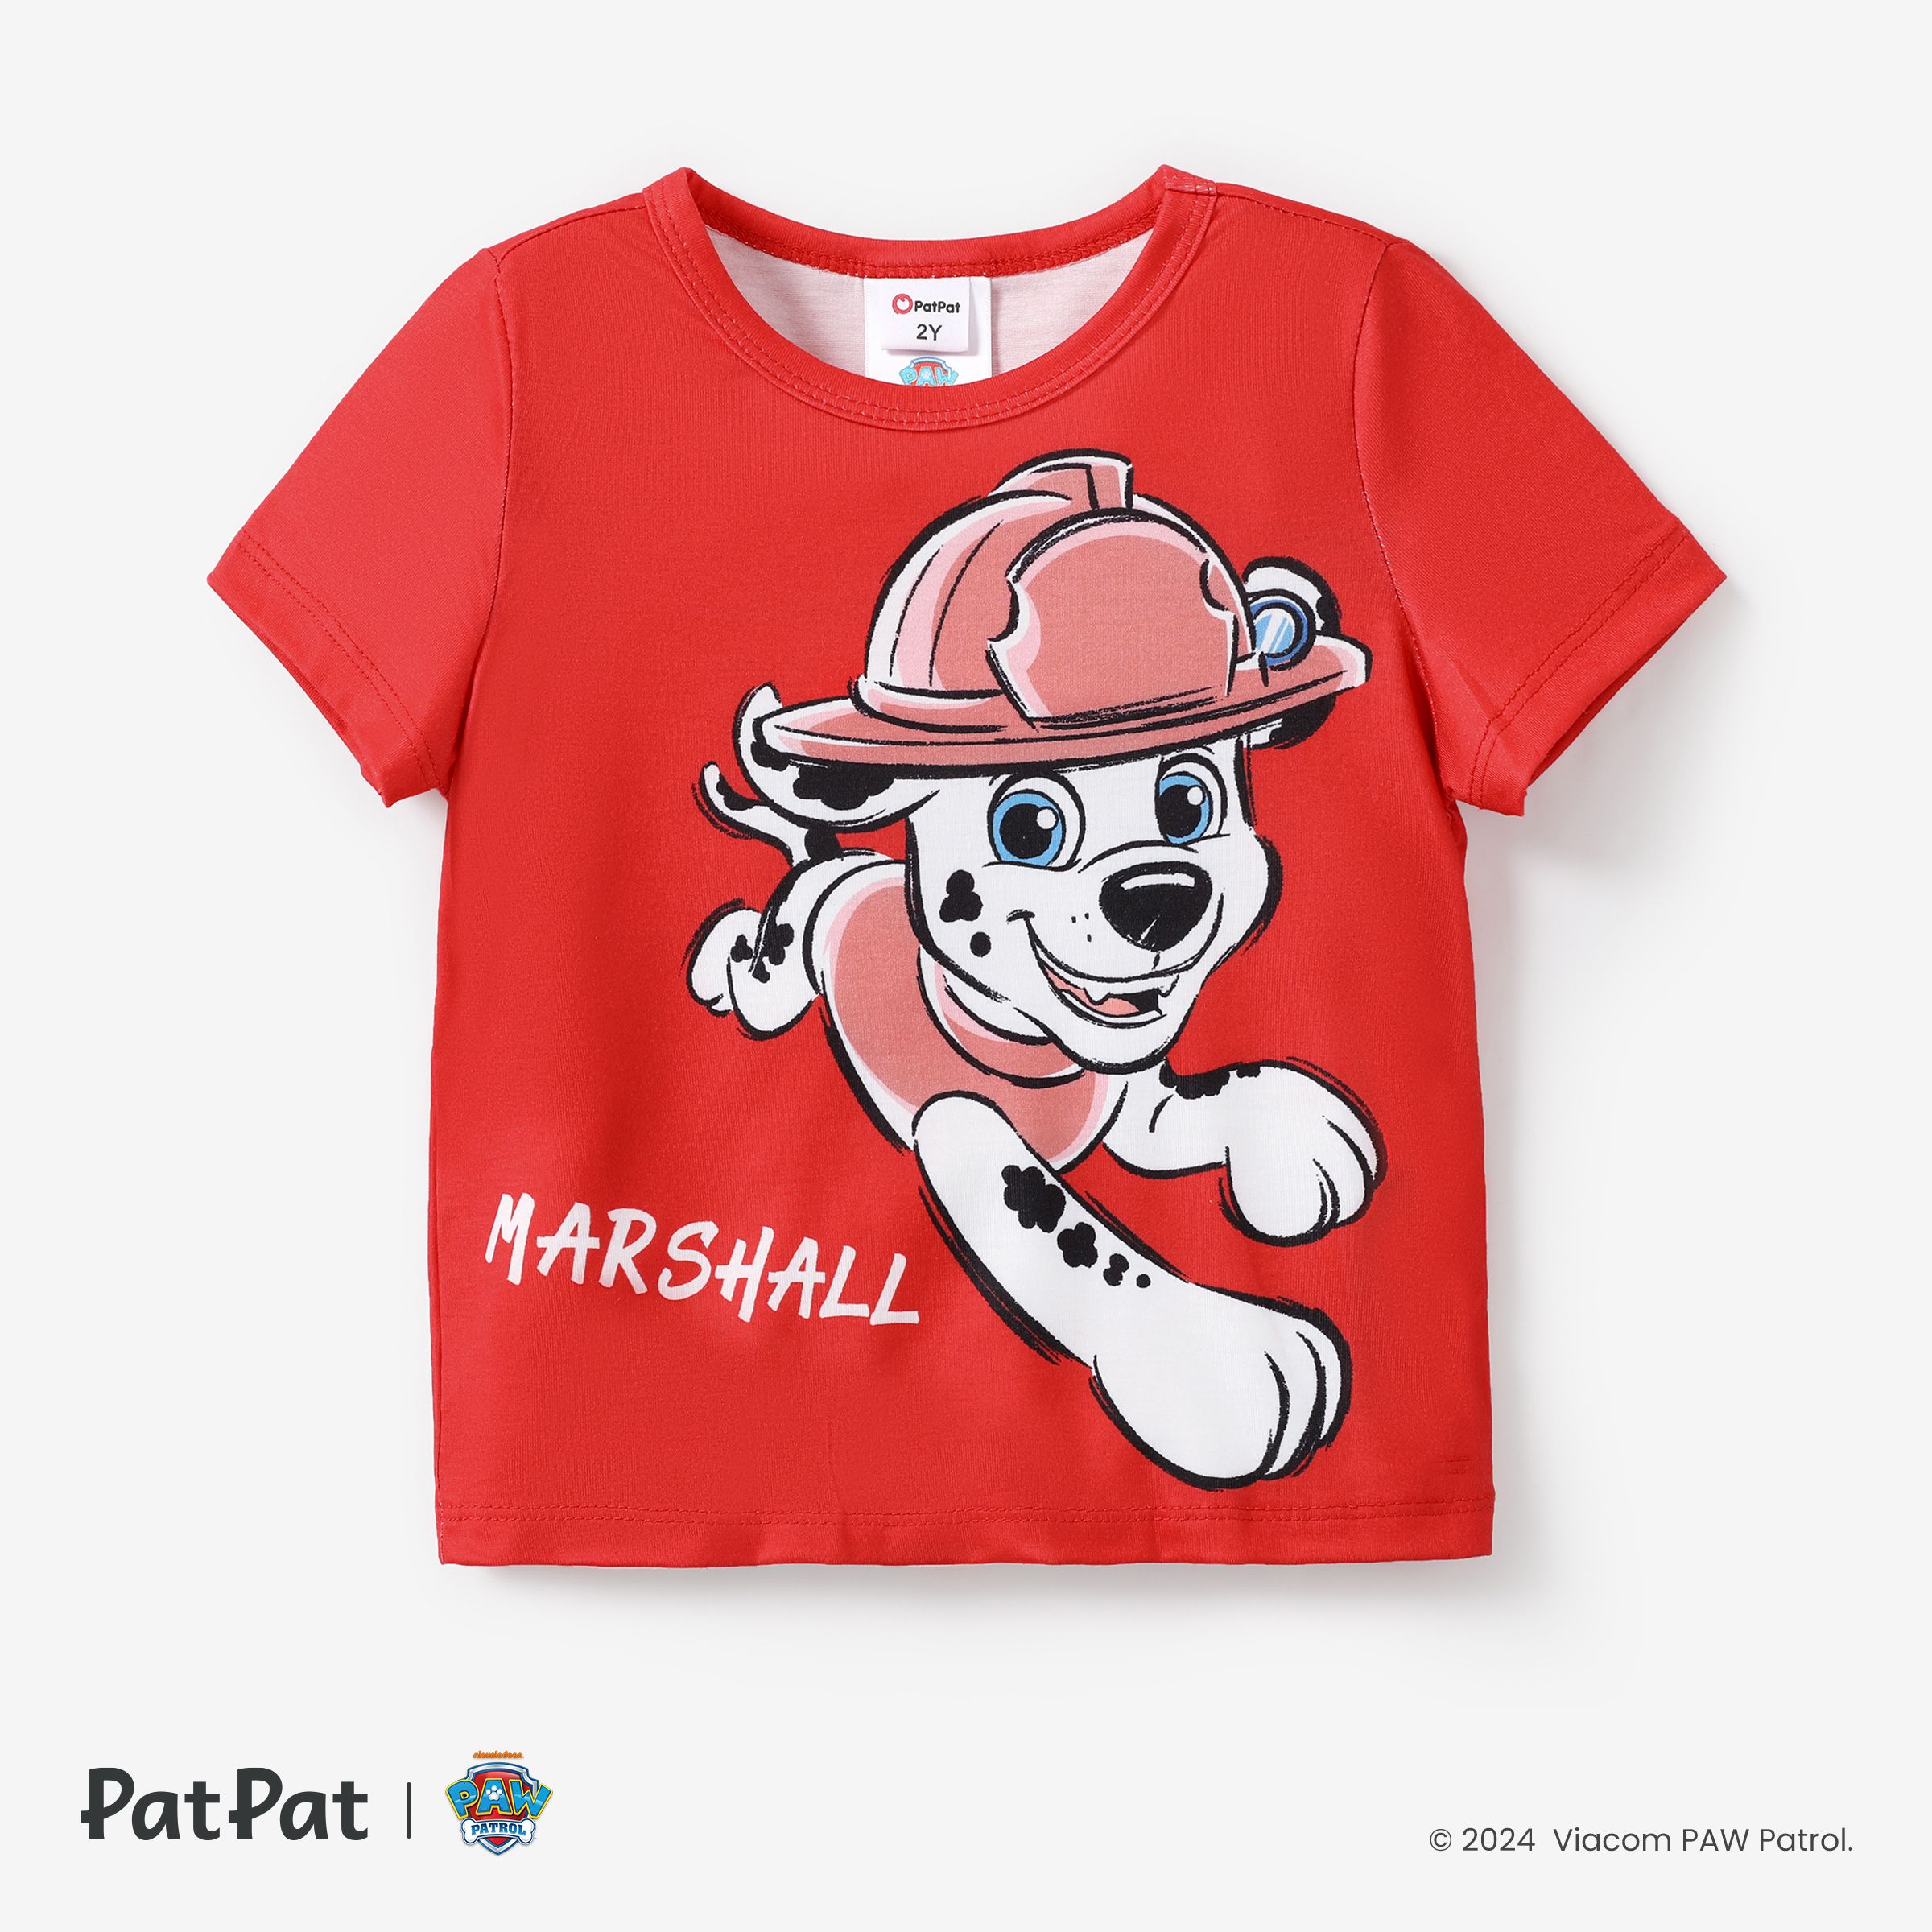 1pc Pat' Patrouille Enfant Fille/Garçon Mignon Personnage Imprimé T-shirt